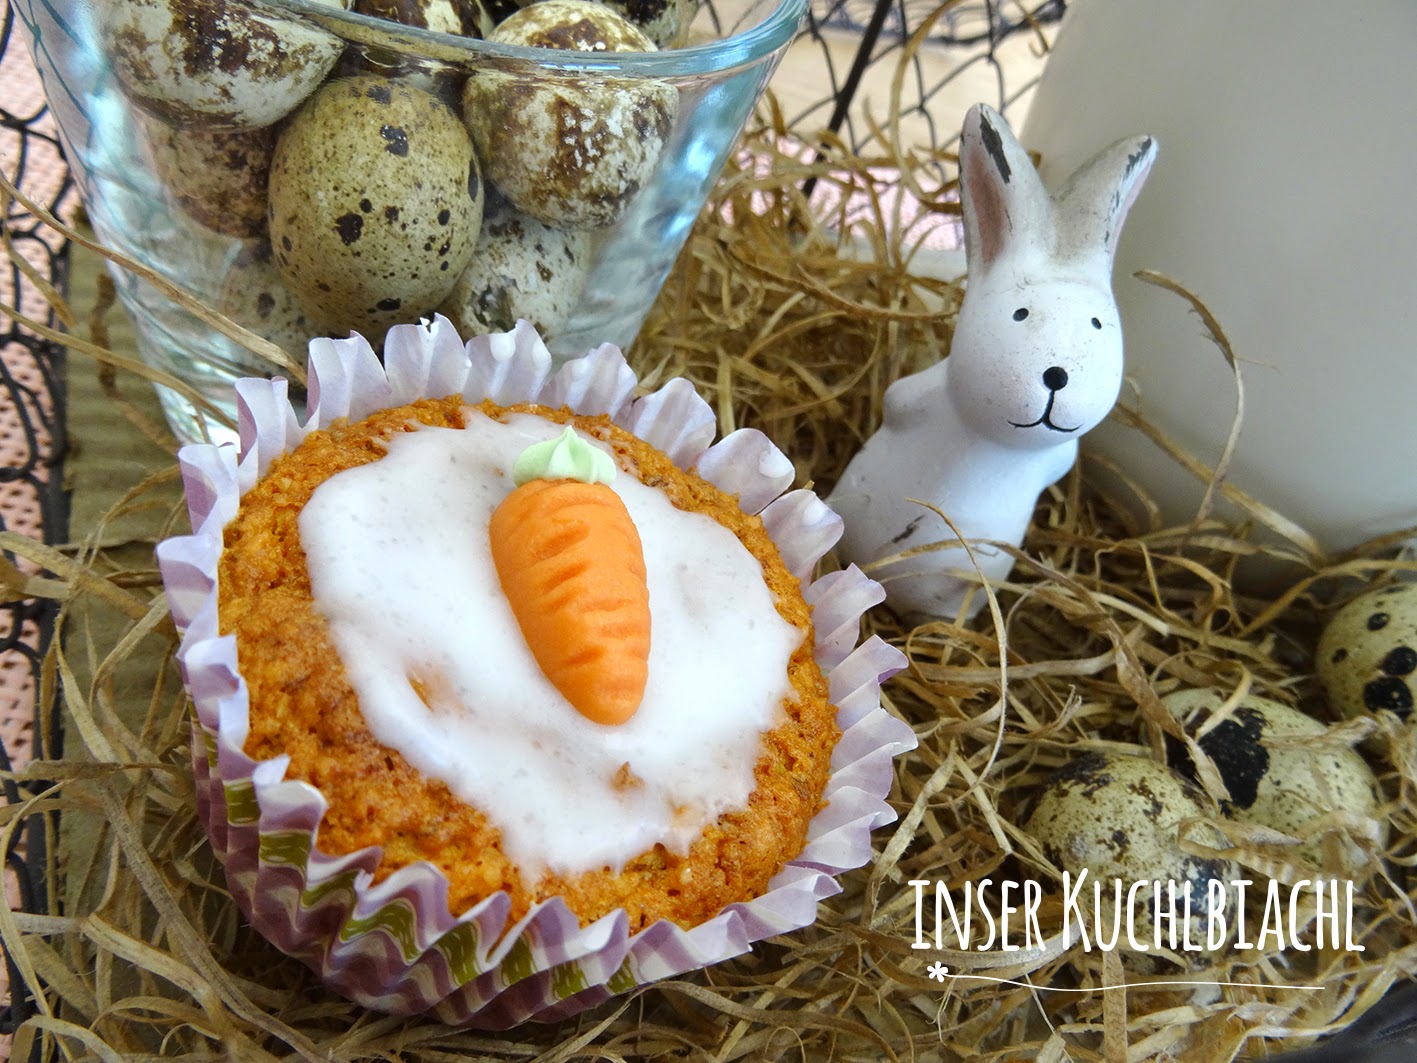 inser Kuchlbiachl: Karottenmuffins - probieren wir mit diesen hübschen ...